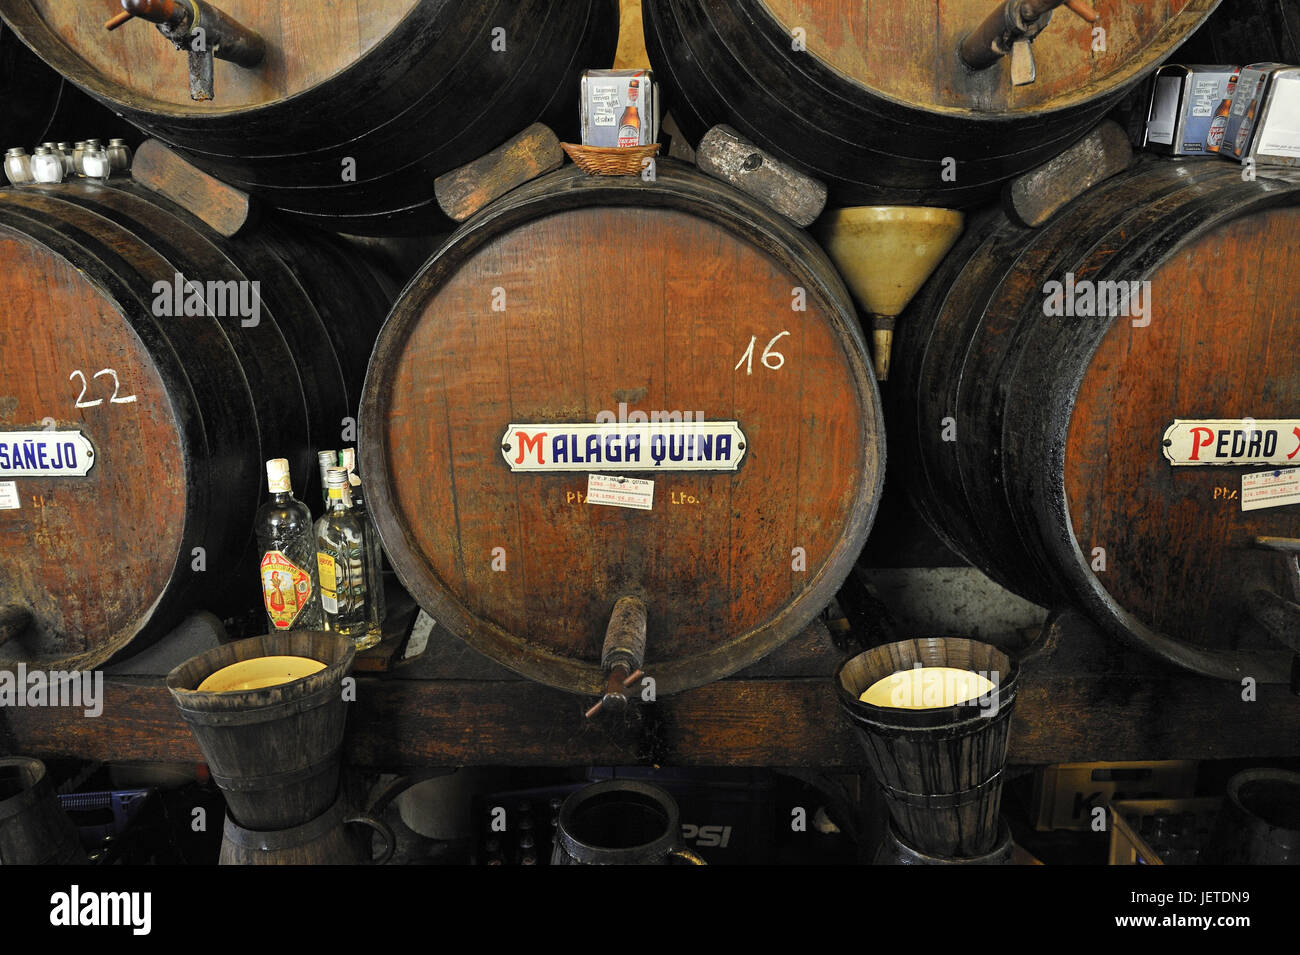 Spain, Malaga, wine casks in a wine bar, Stock Photo